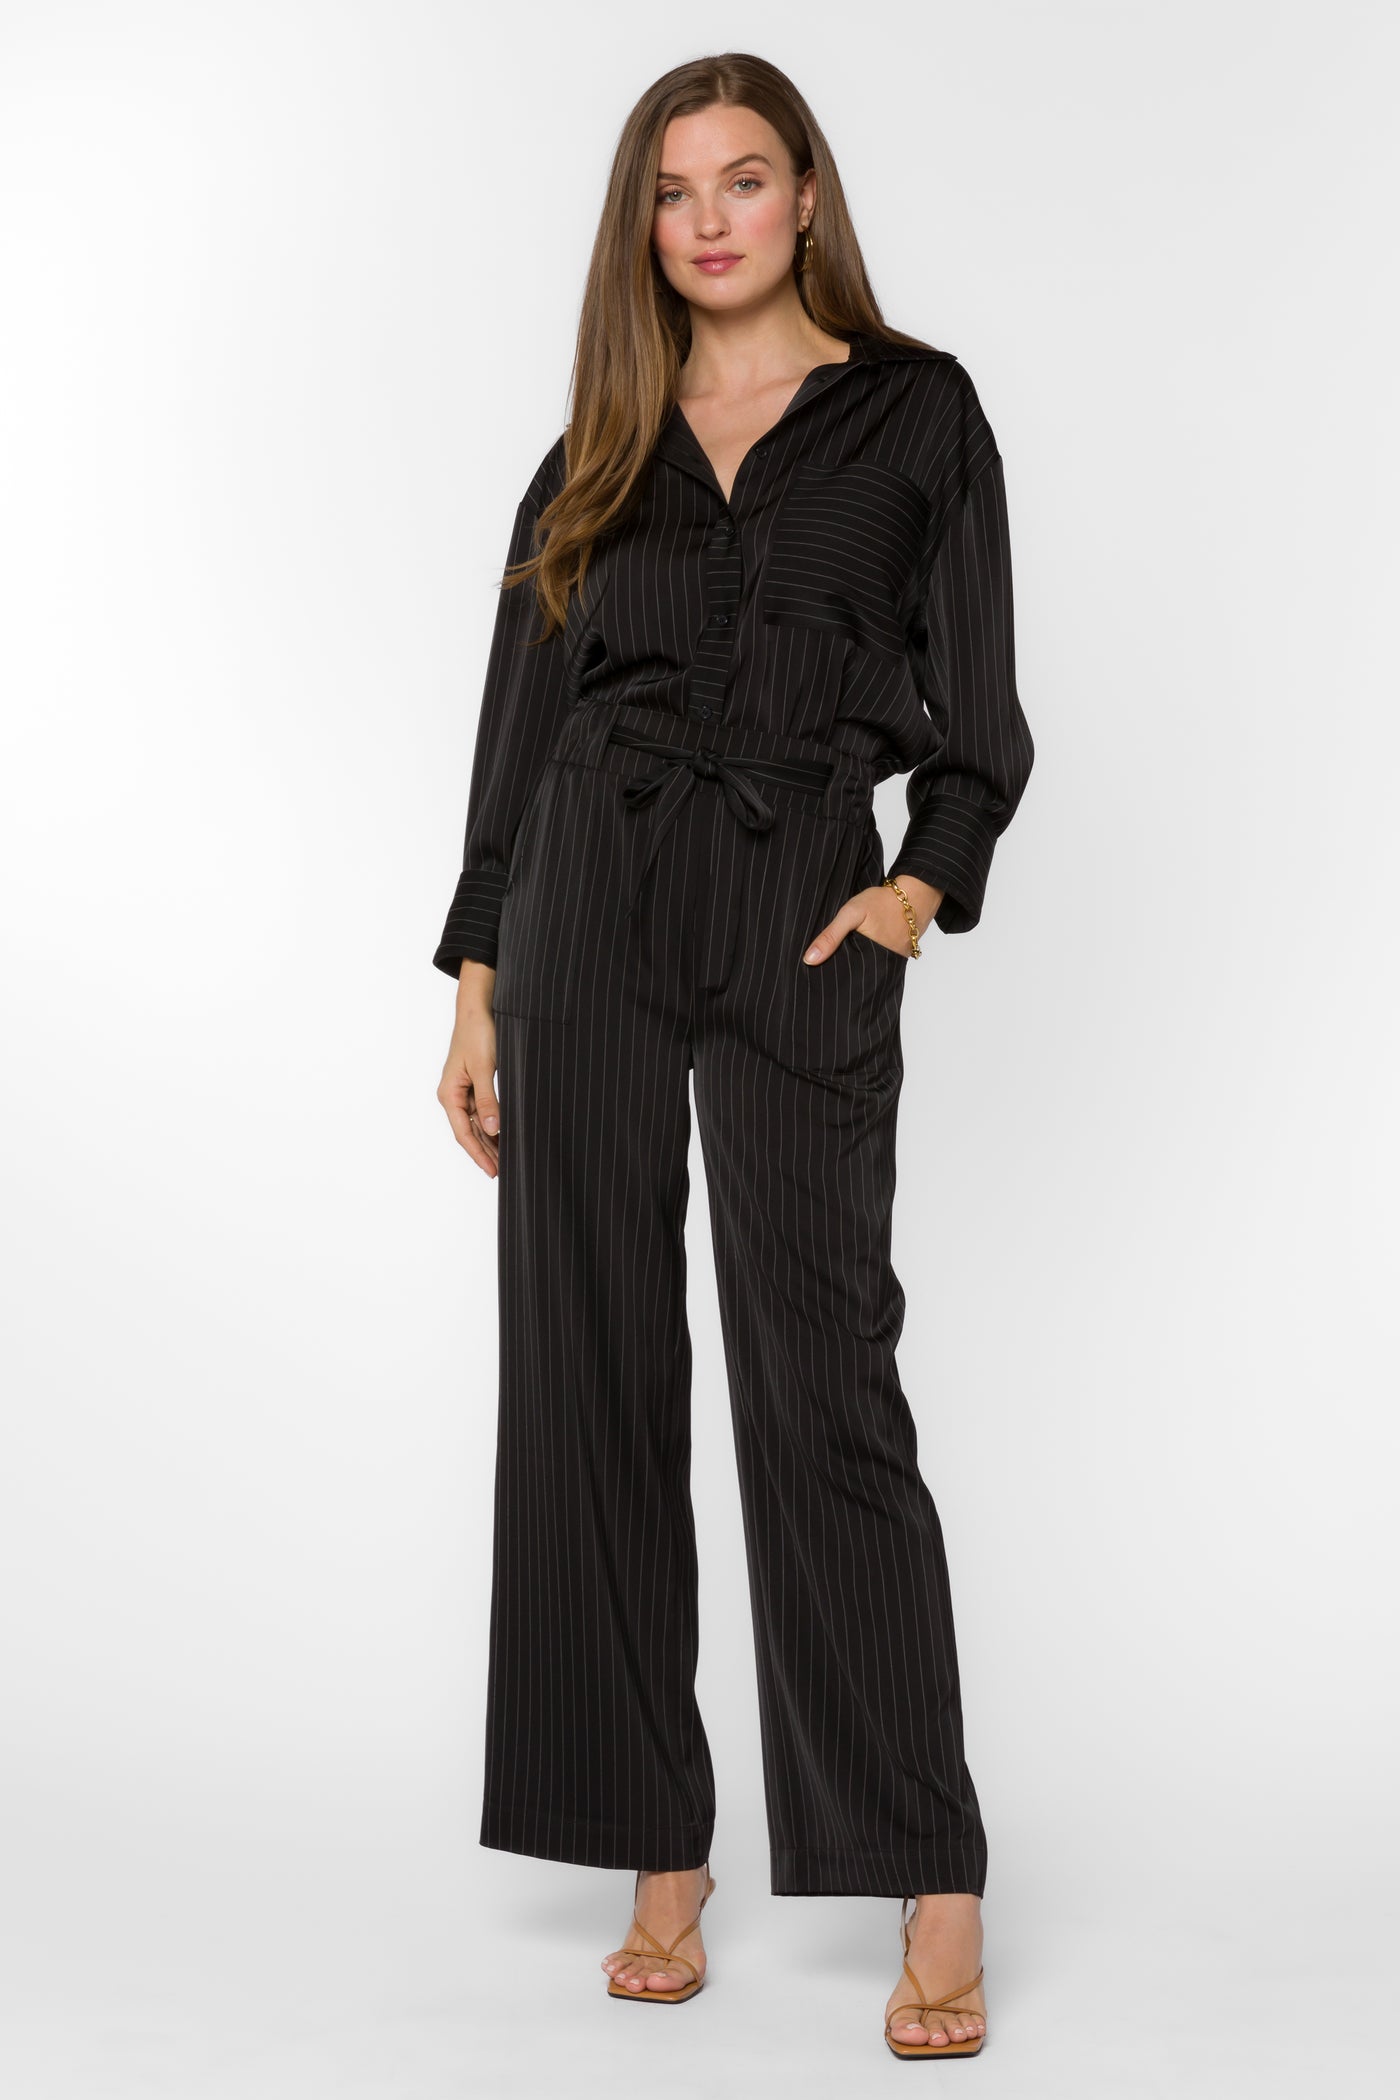 Angeline Black Stripe Pant - Bottoms - Velvet Heart Clothing